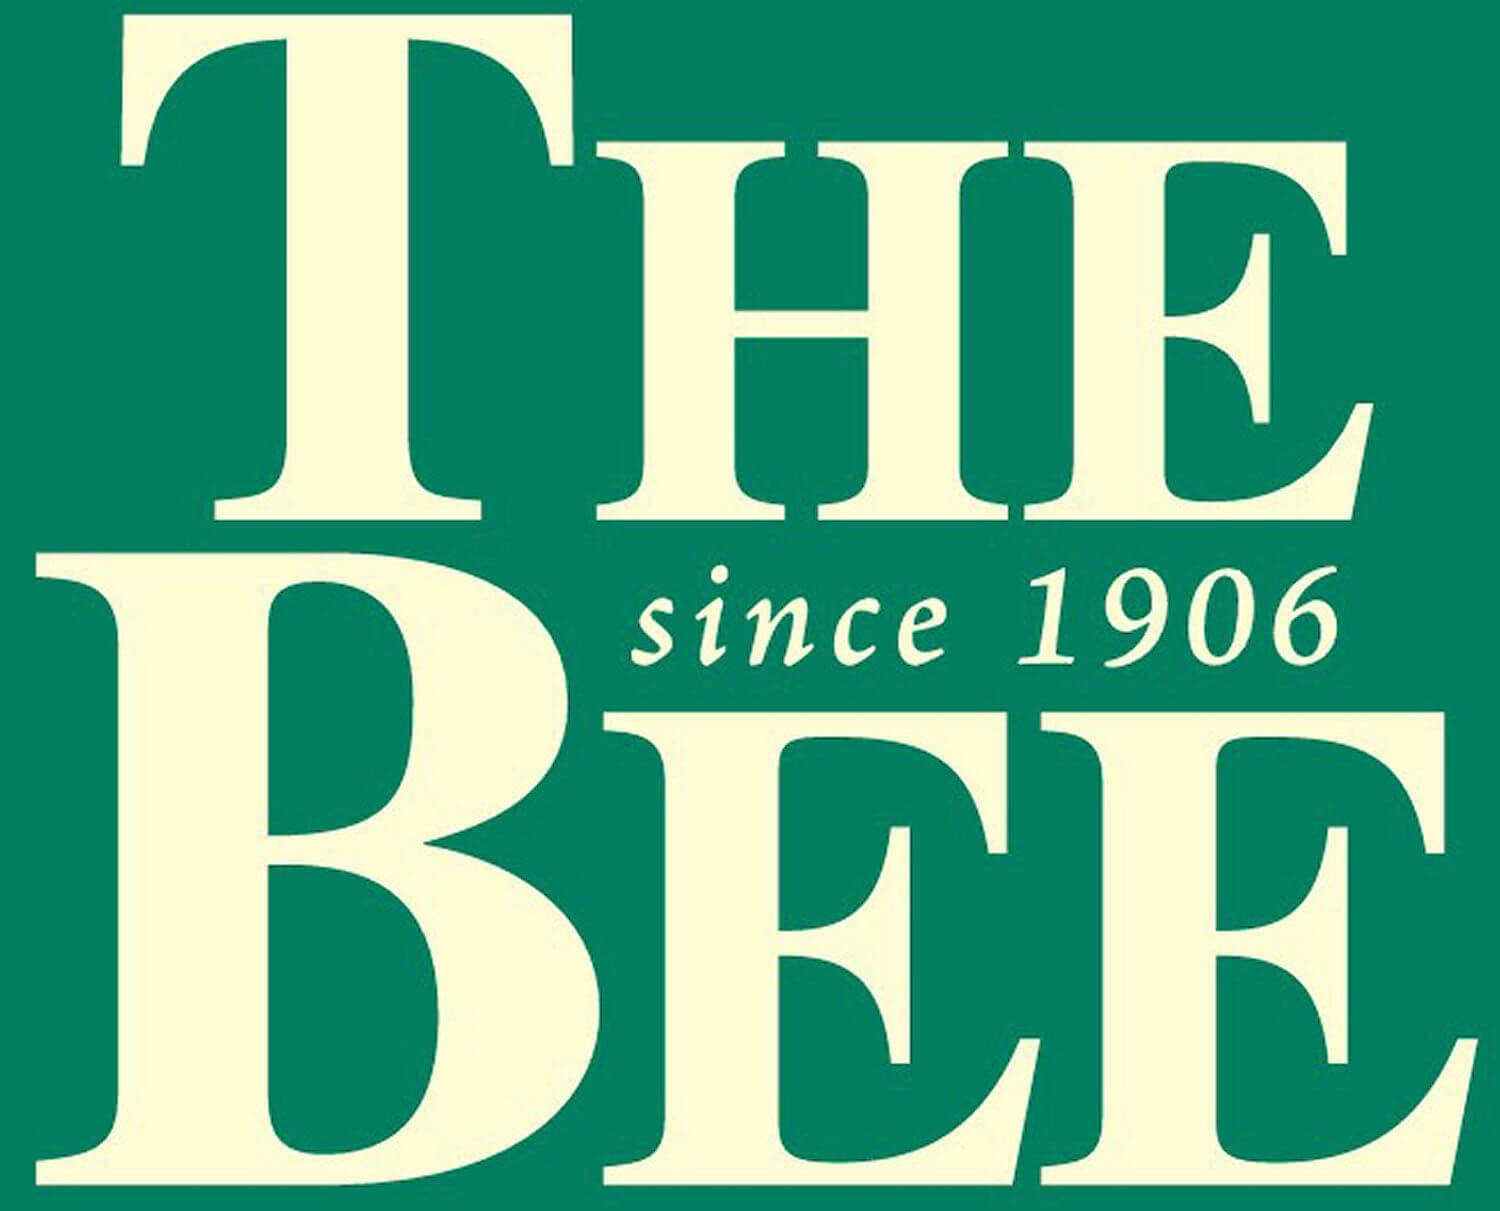 BEE big logo.jpeg